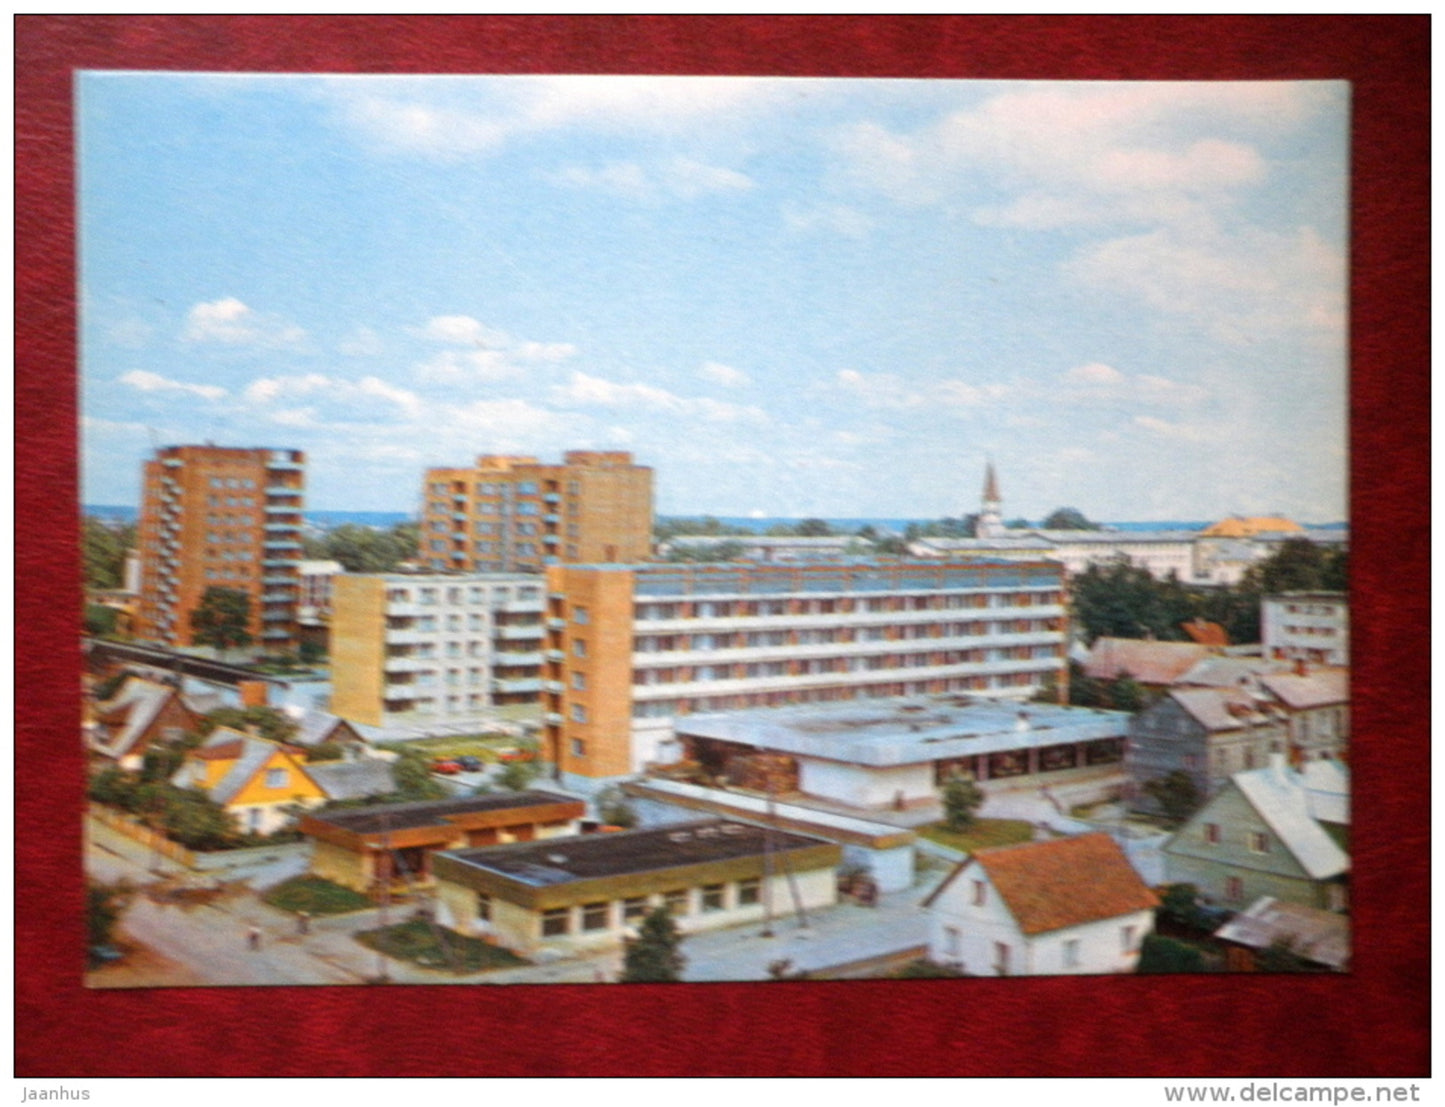 town Võru - 1984 - Estonia USSR - unused - JH Postcards